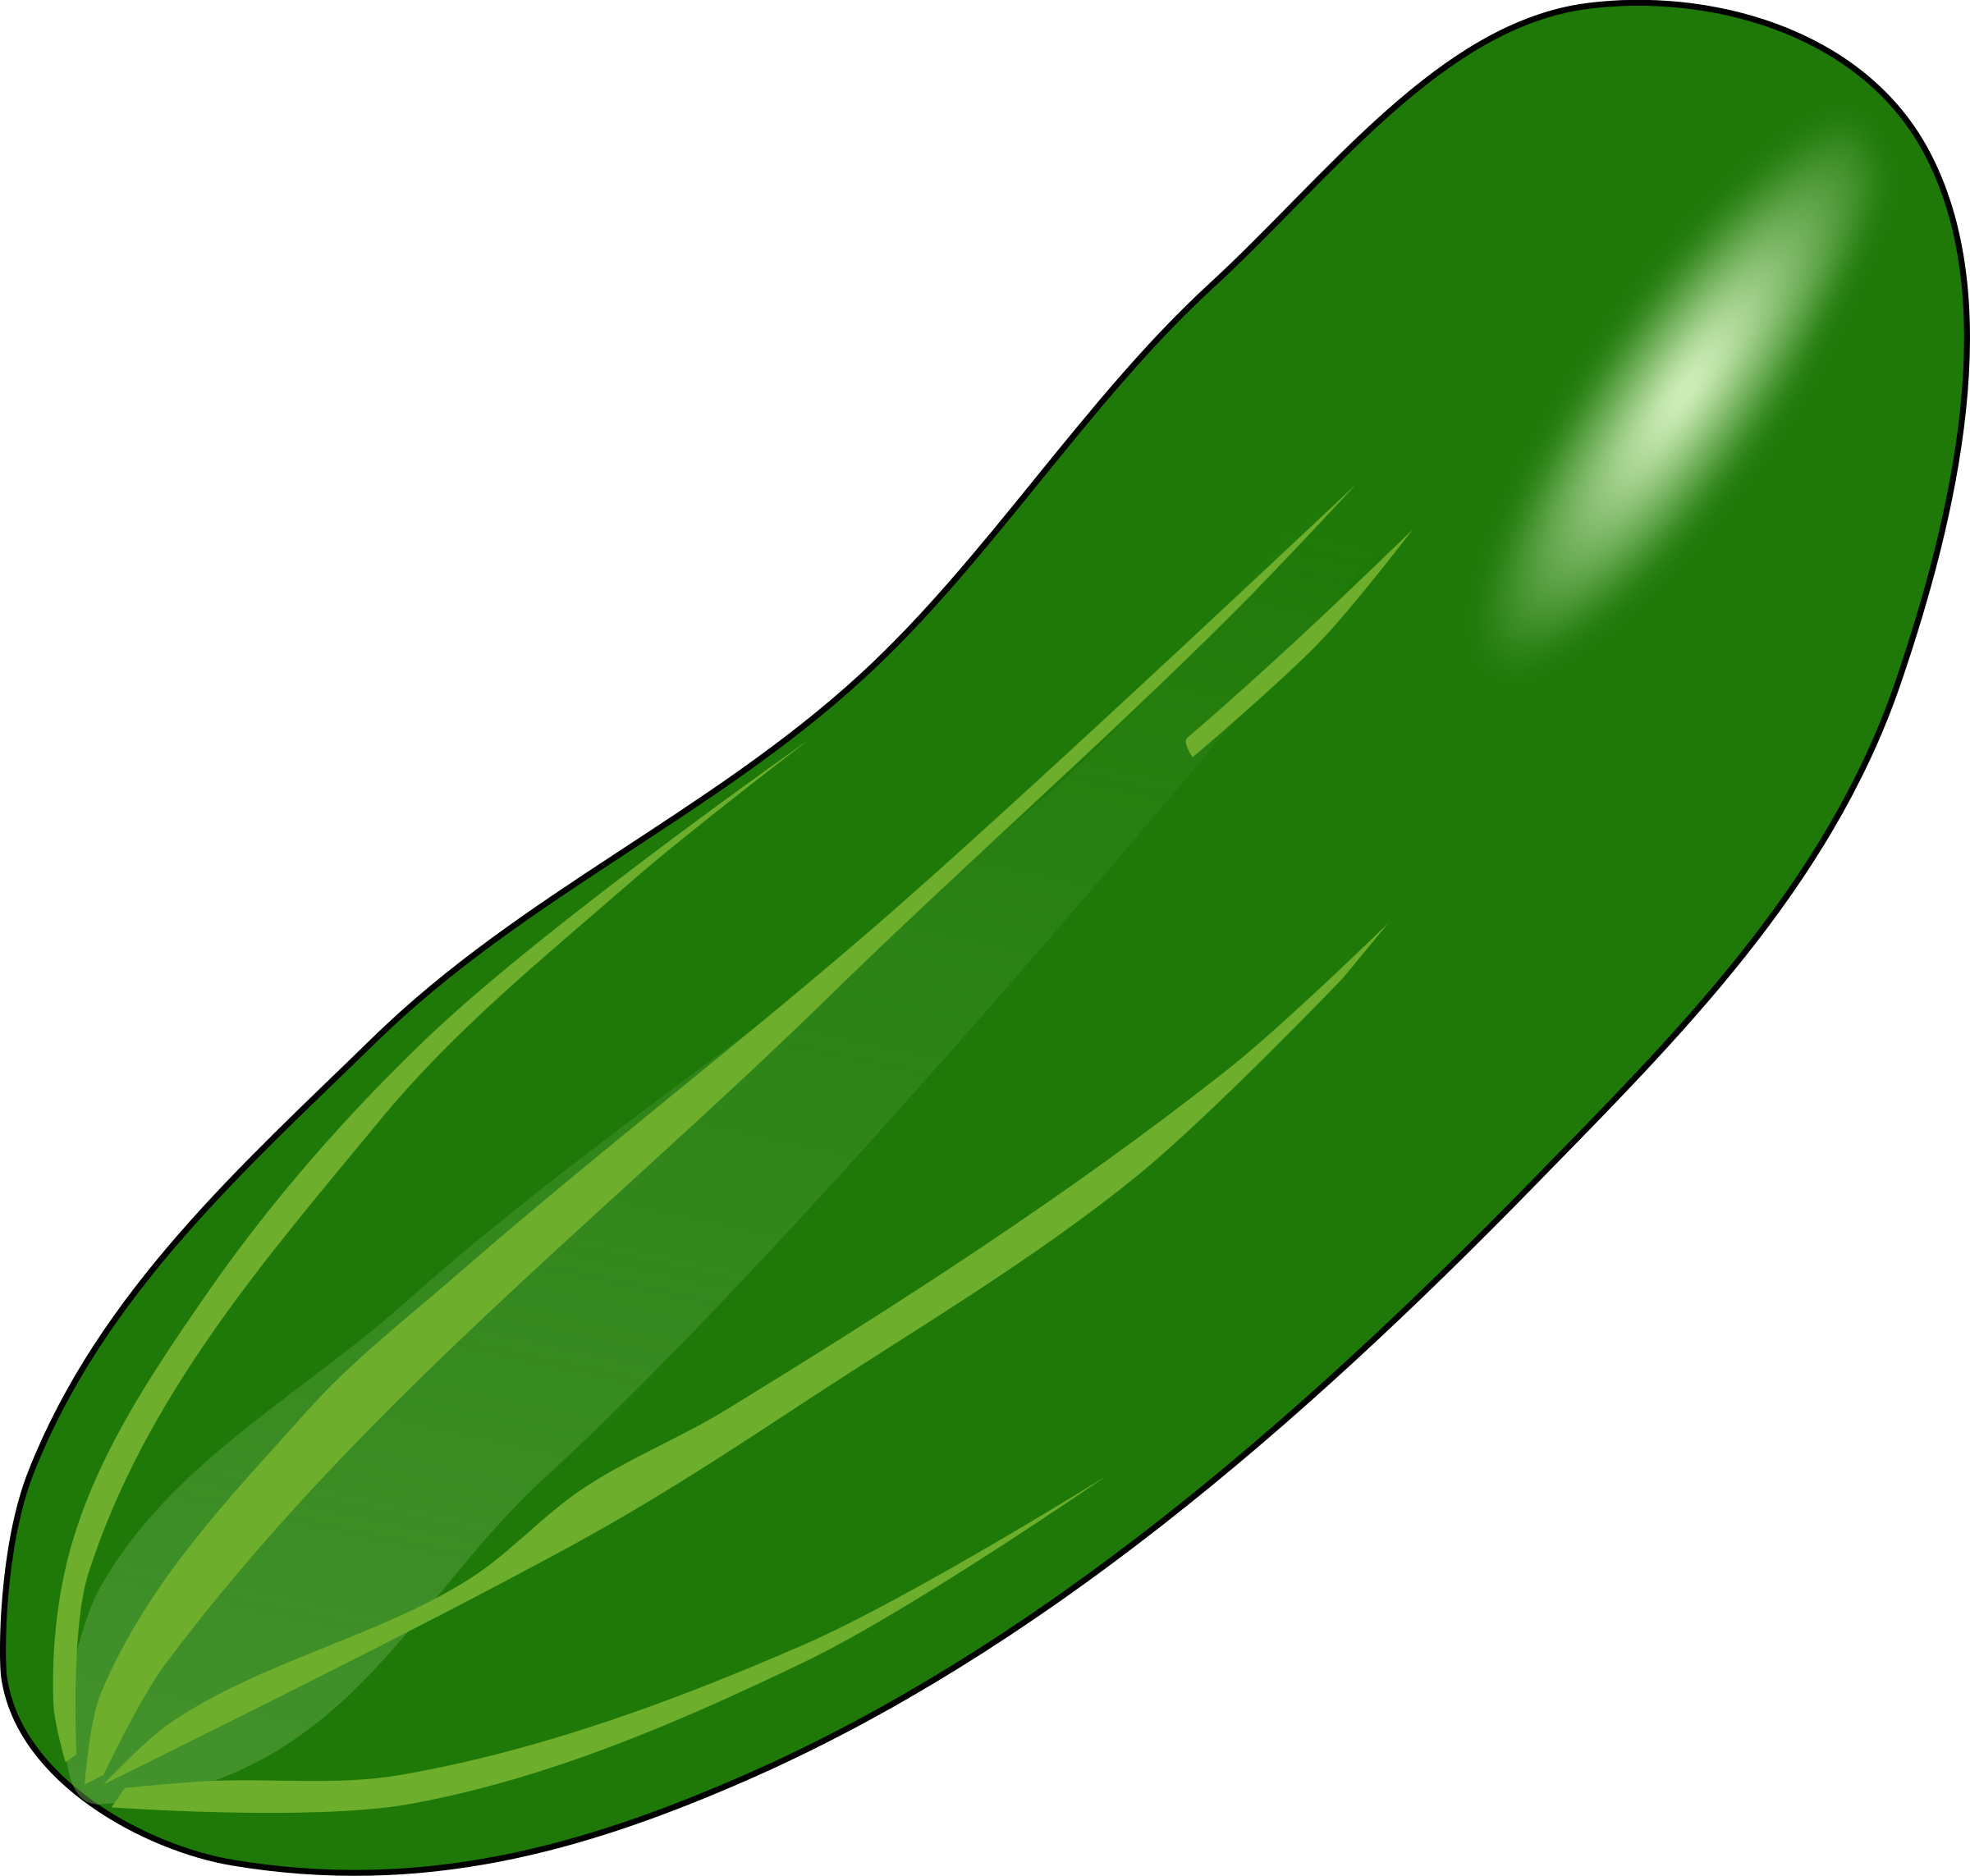 Cucumber clipart cucumberclip - Cucumber Clip Art